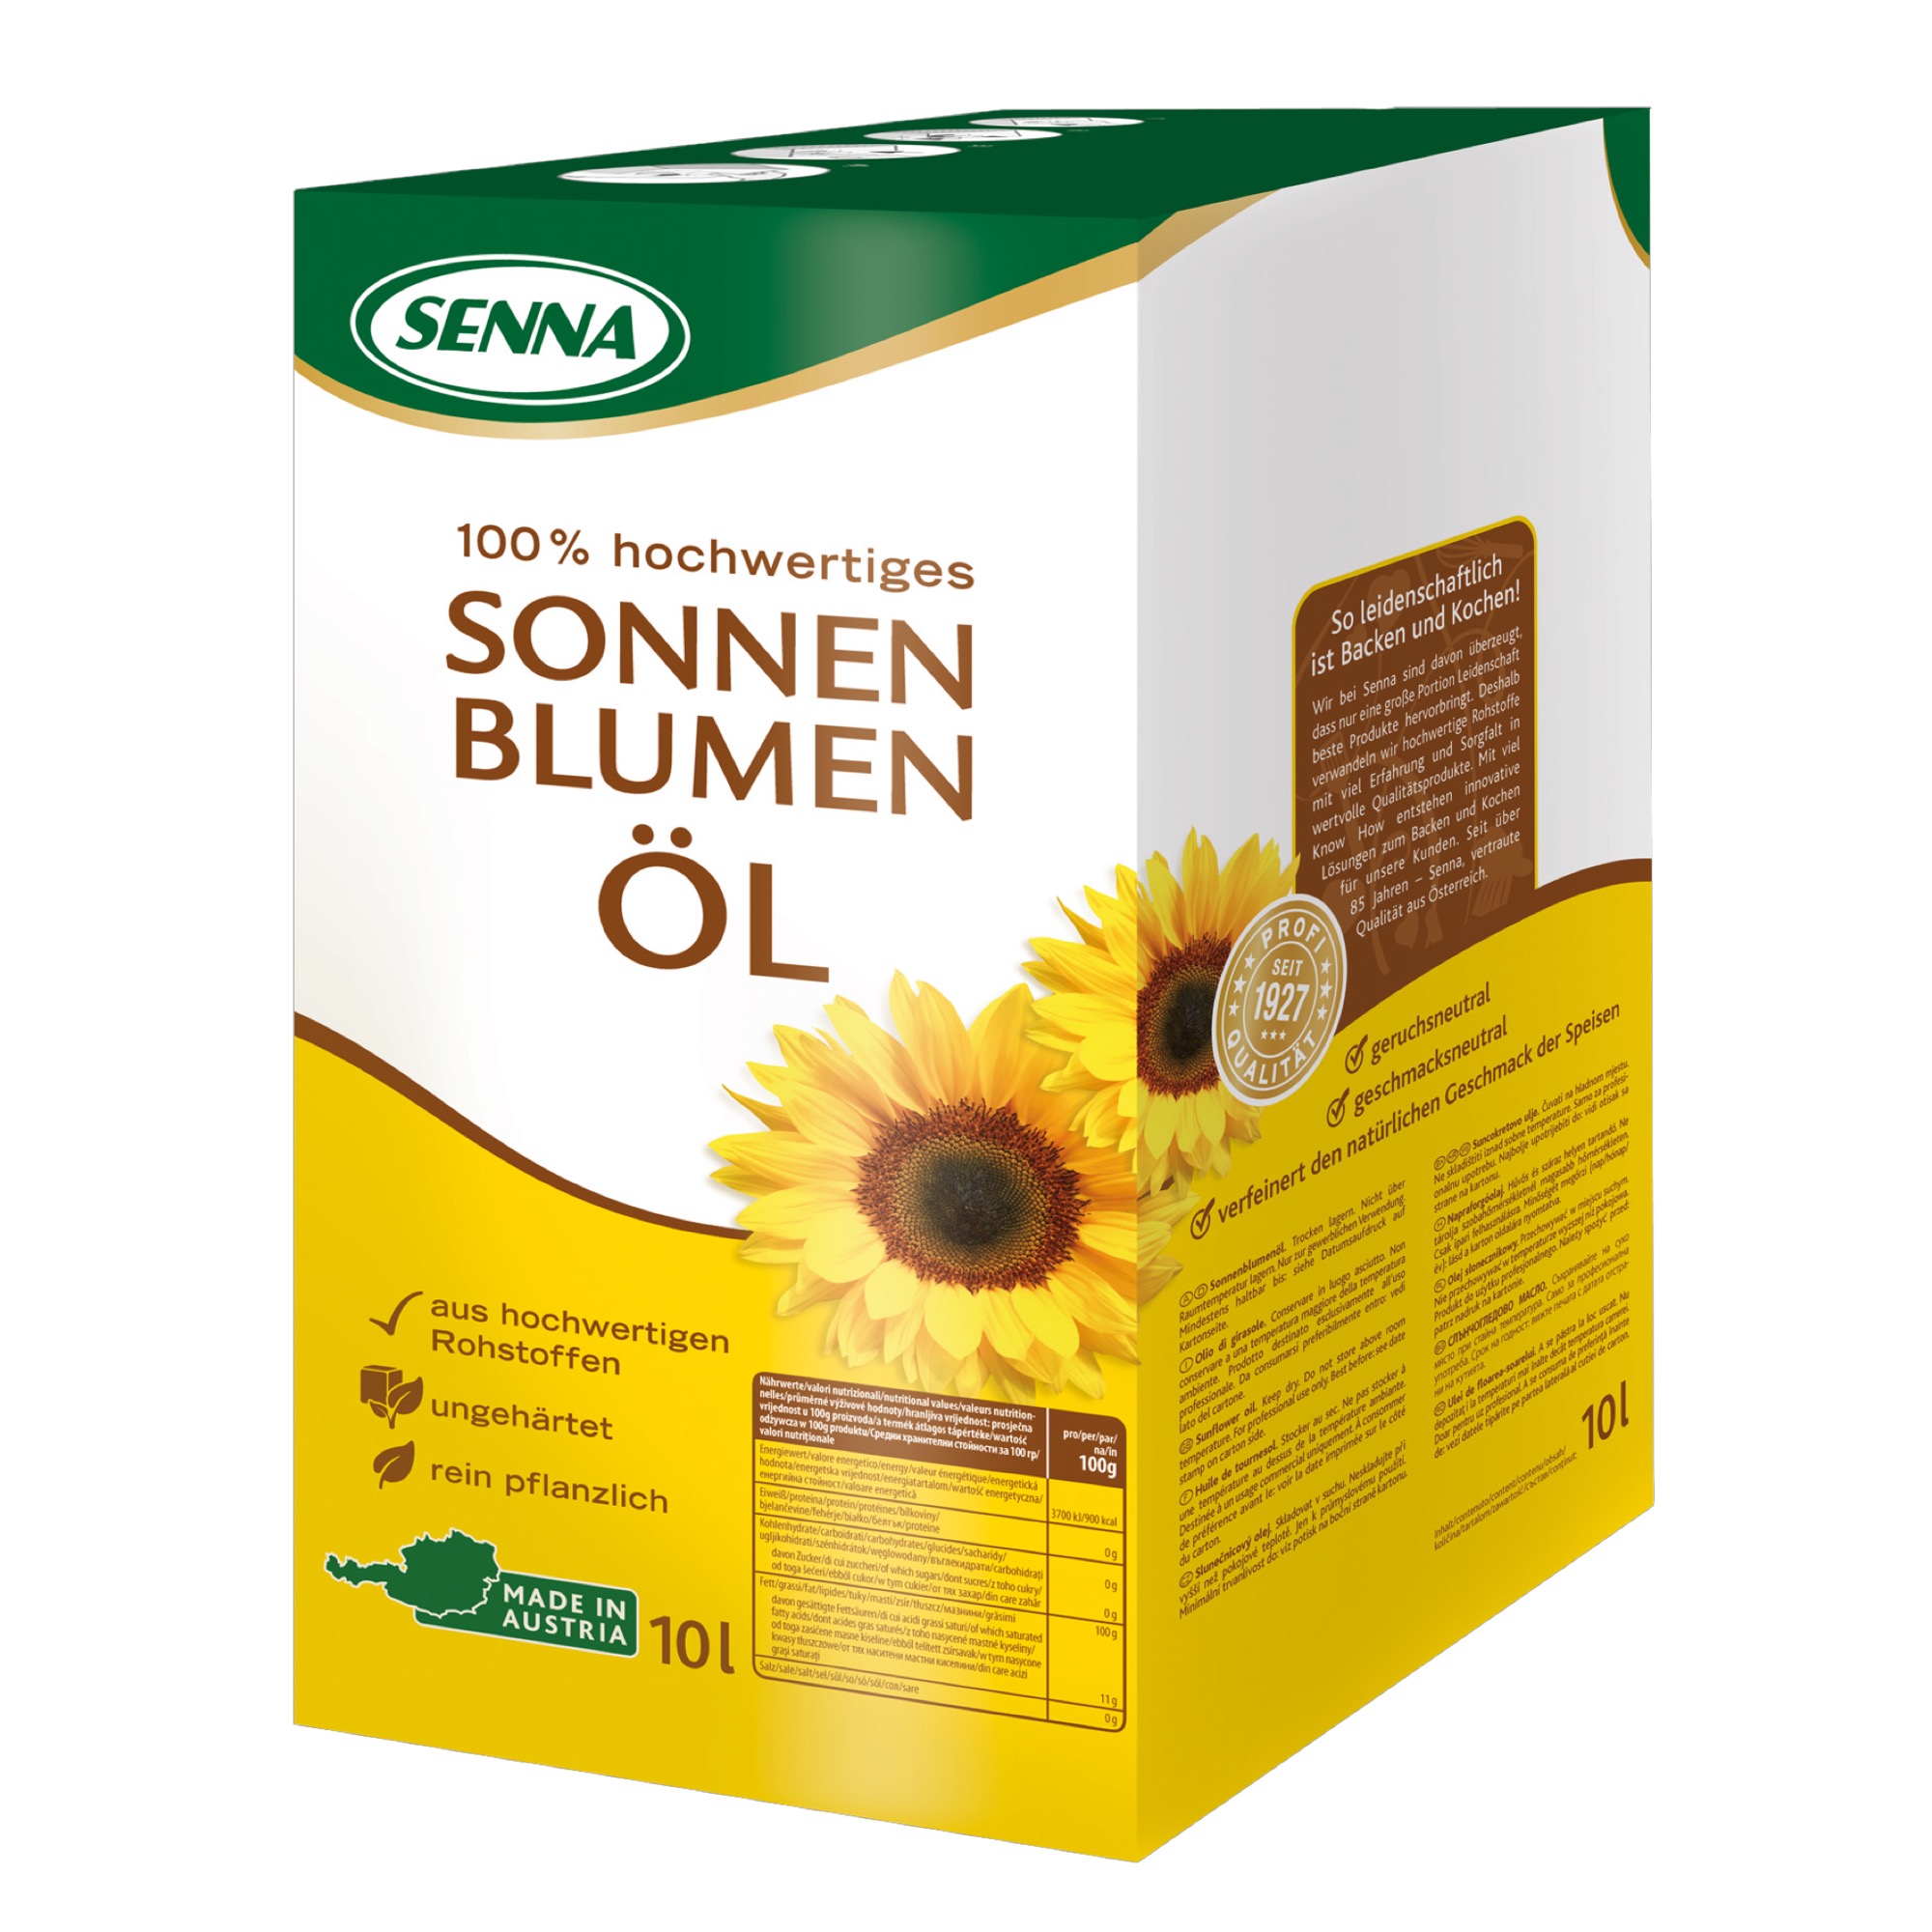 Senna slnečnicový olej Bag-in-Box 10l